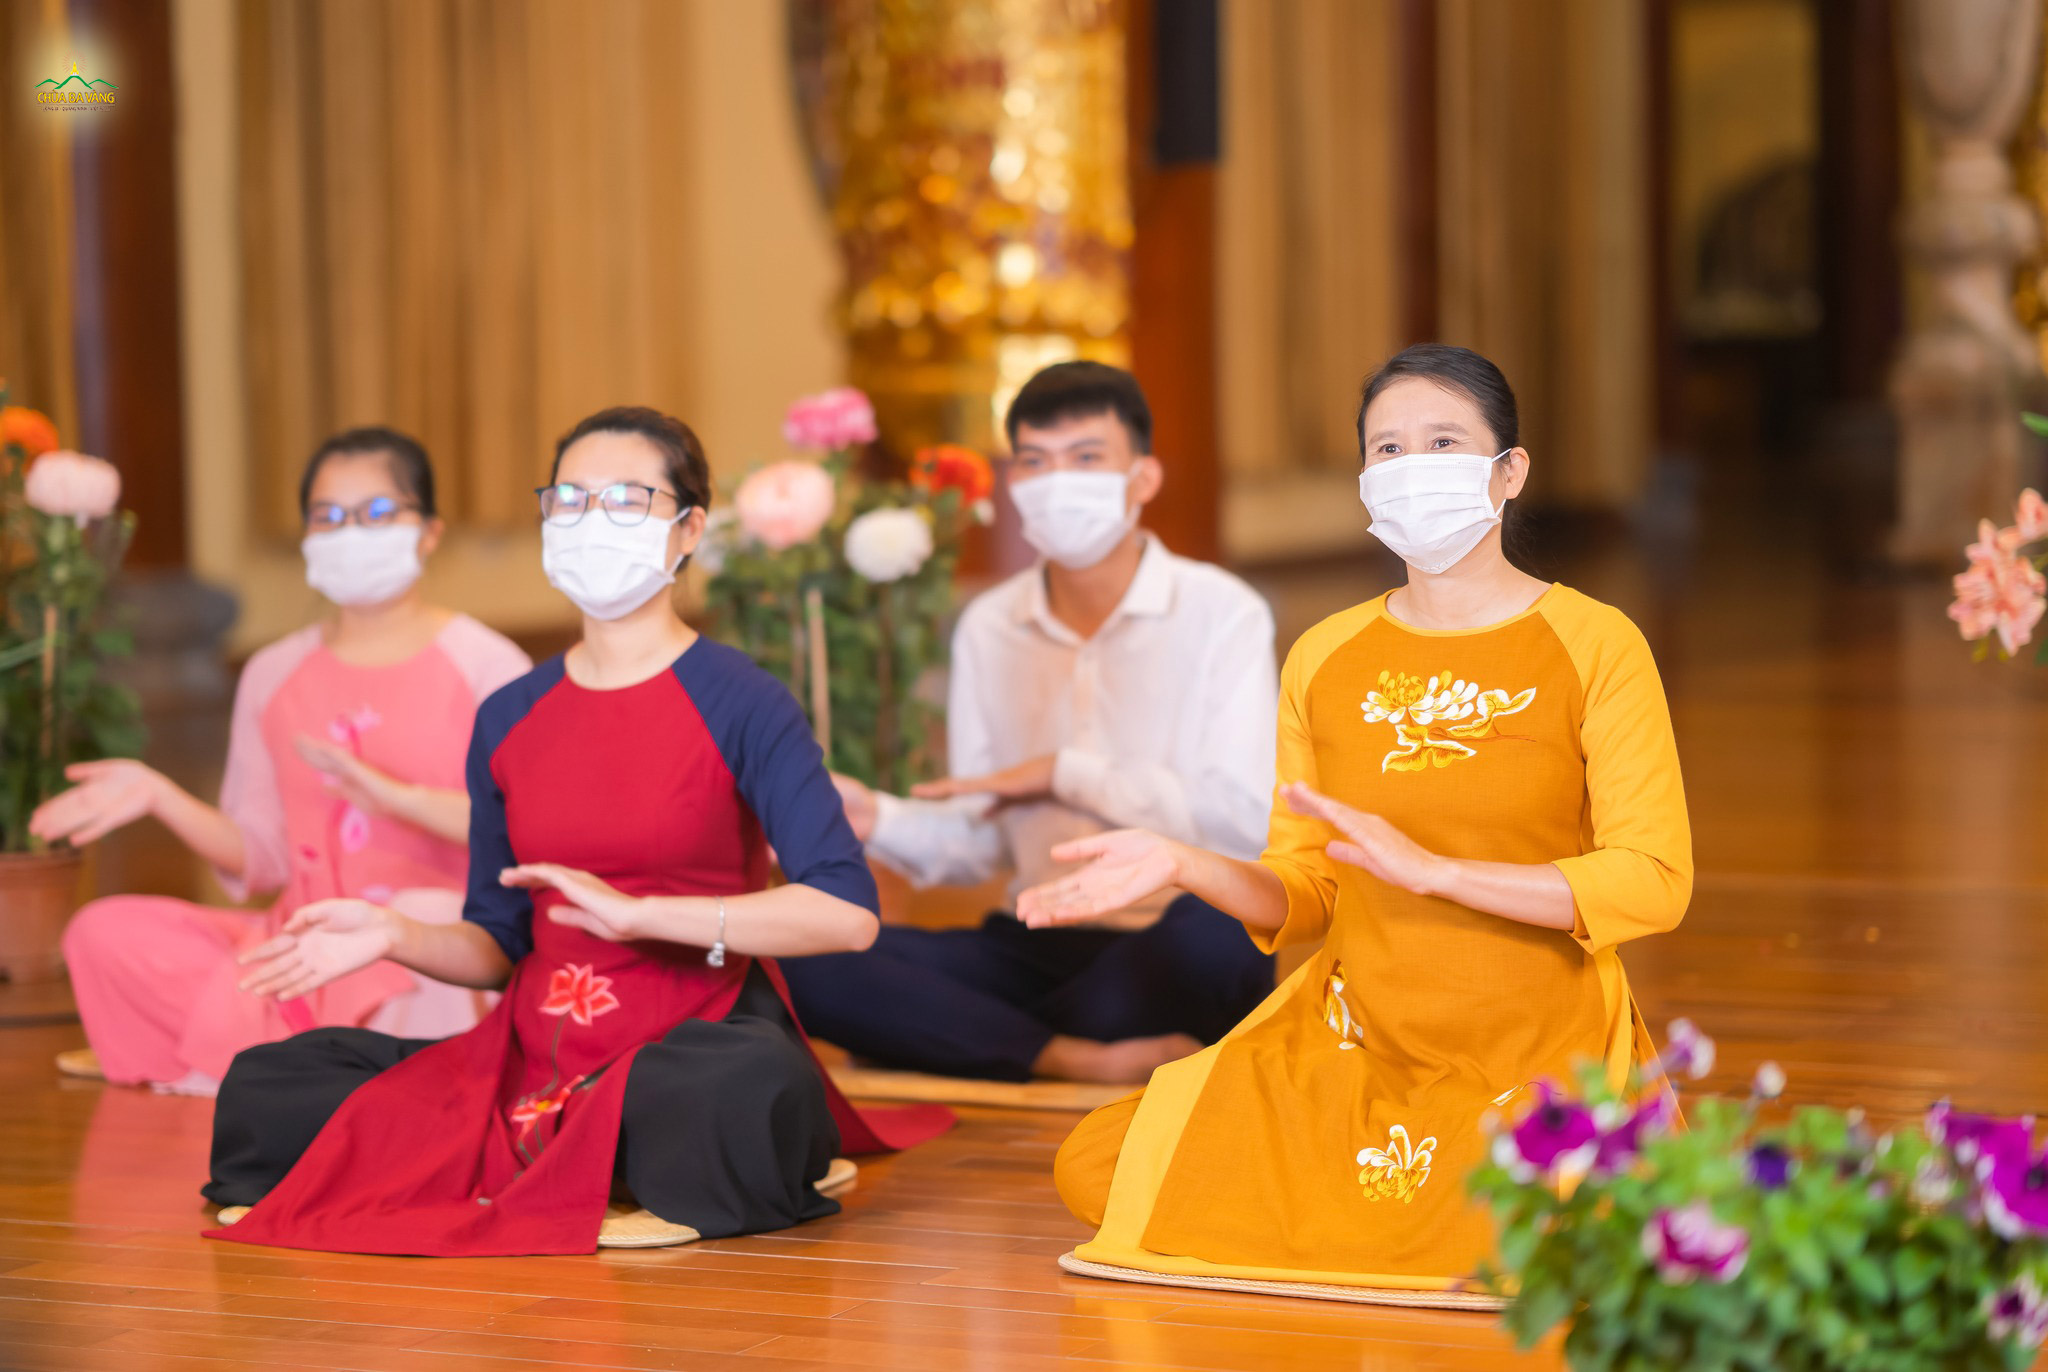   Chương trình diễn ra với sự tham gia của Phật tử Phạm Thị Yến - Chủ nhiệm CLB Cúc Vàng - Tập Tu Lục Hòa cùng đại diện Phật tử đang tu tập cấm túc tại chùa Ba Vàng  